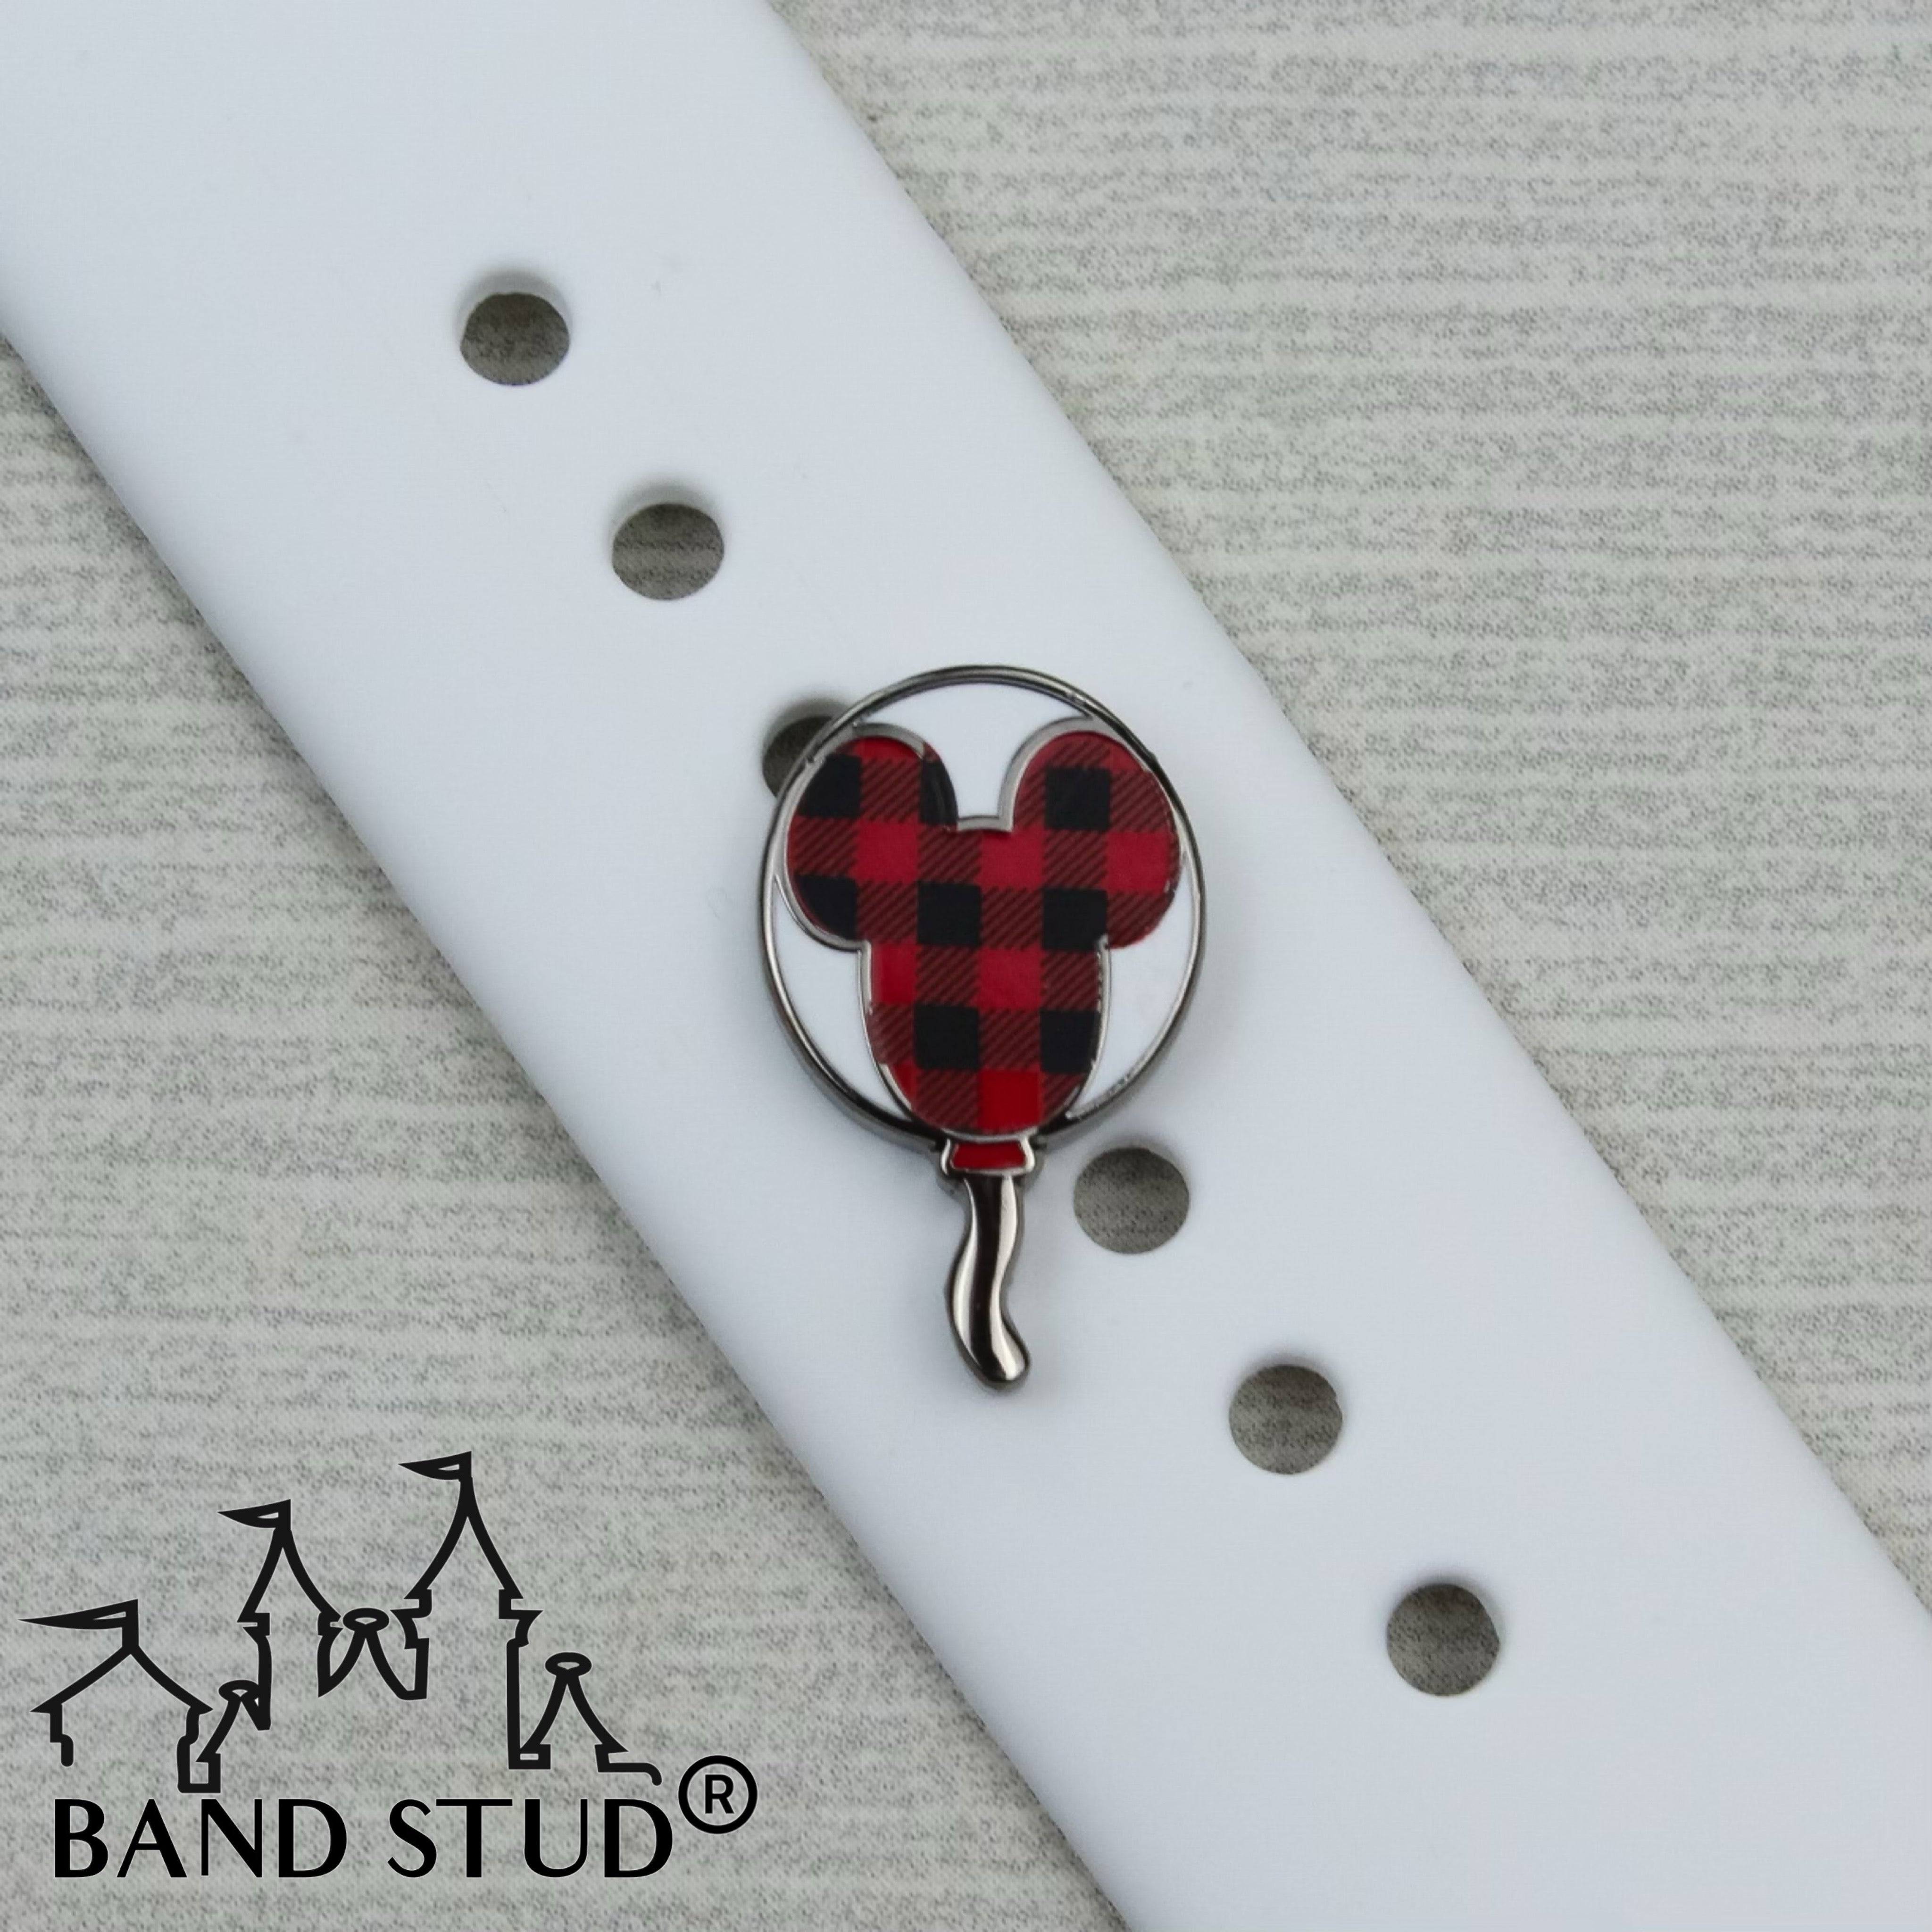 Band Stud® - Christmas Collection - Buffalo Plaid Balloon